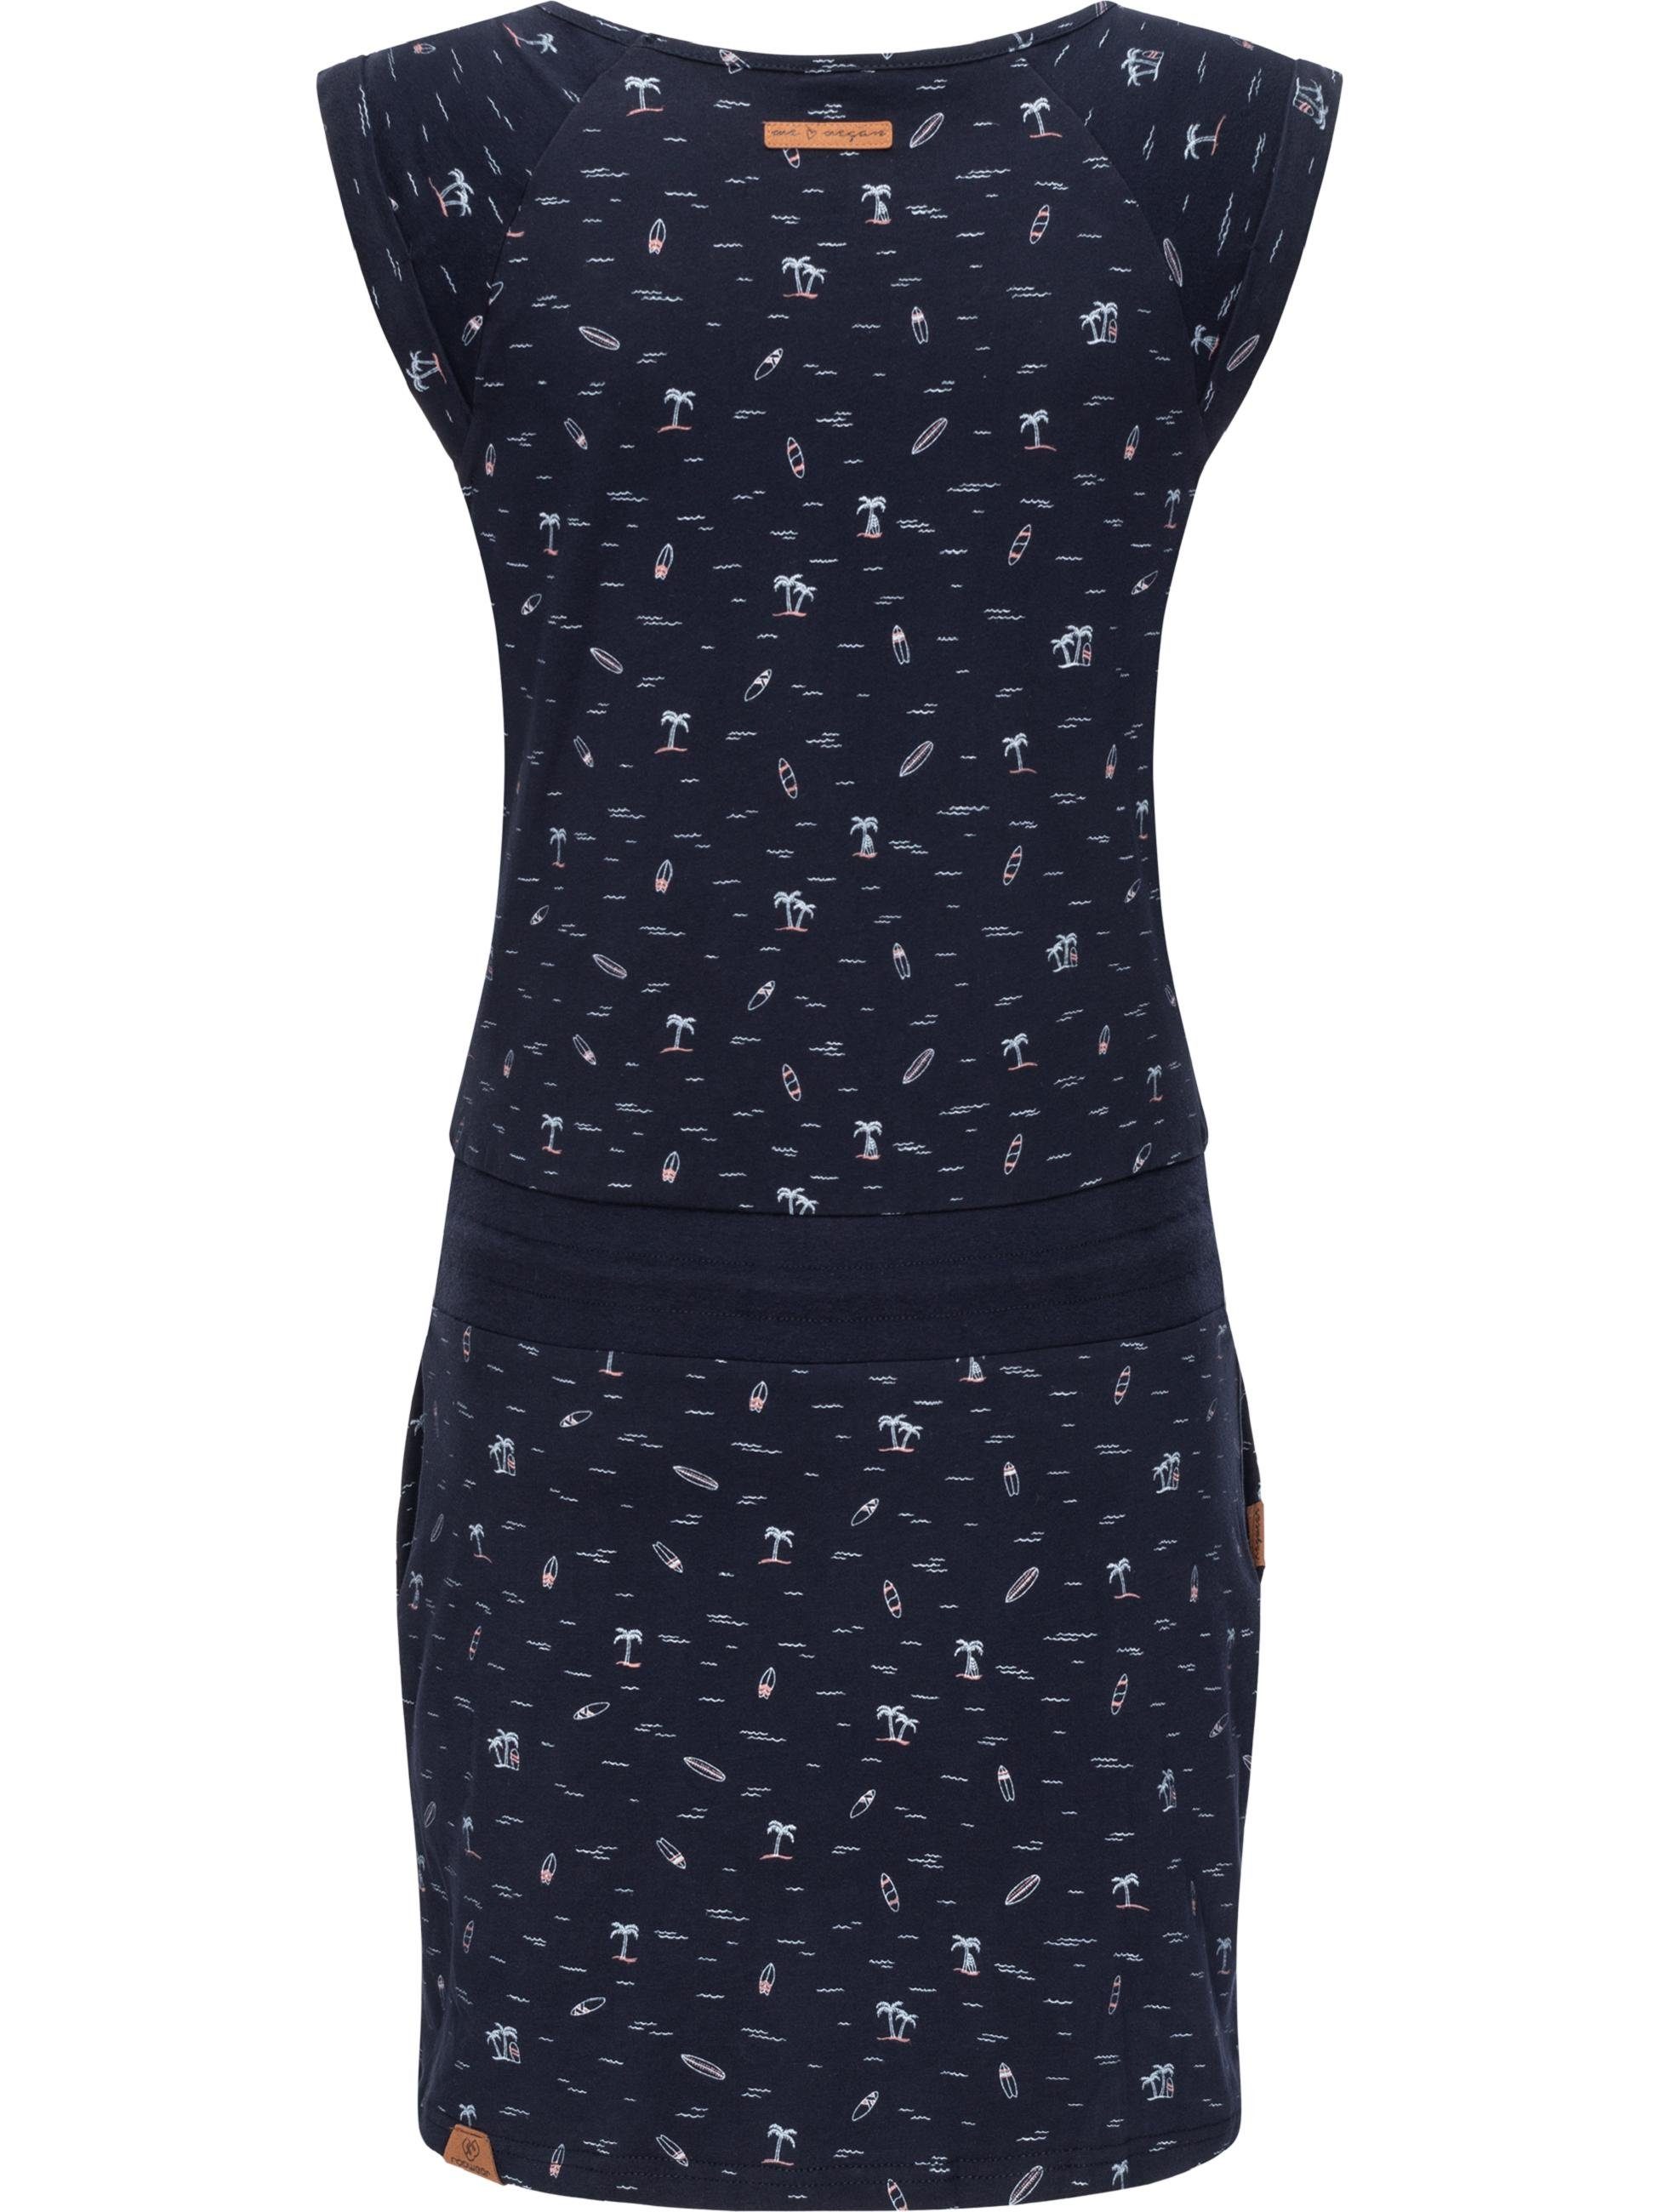 Ragwear Sommerkleid Verarbeitung Penelope Kleid Qualität, hergestellt vegan Baumwoll Hochwertige 100% u. Print, mit leichtes